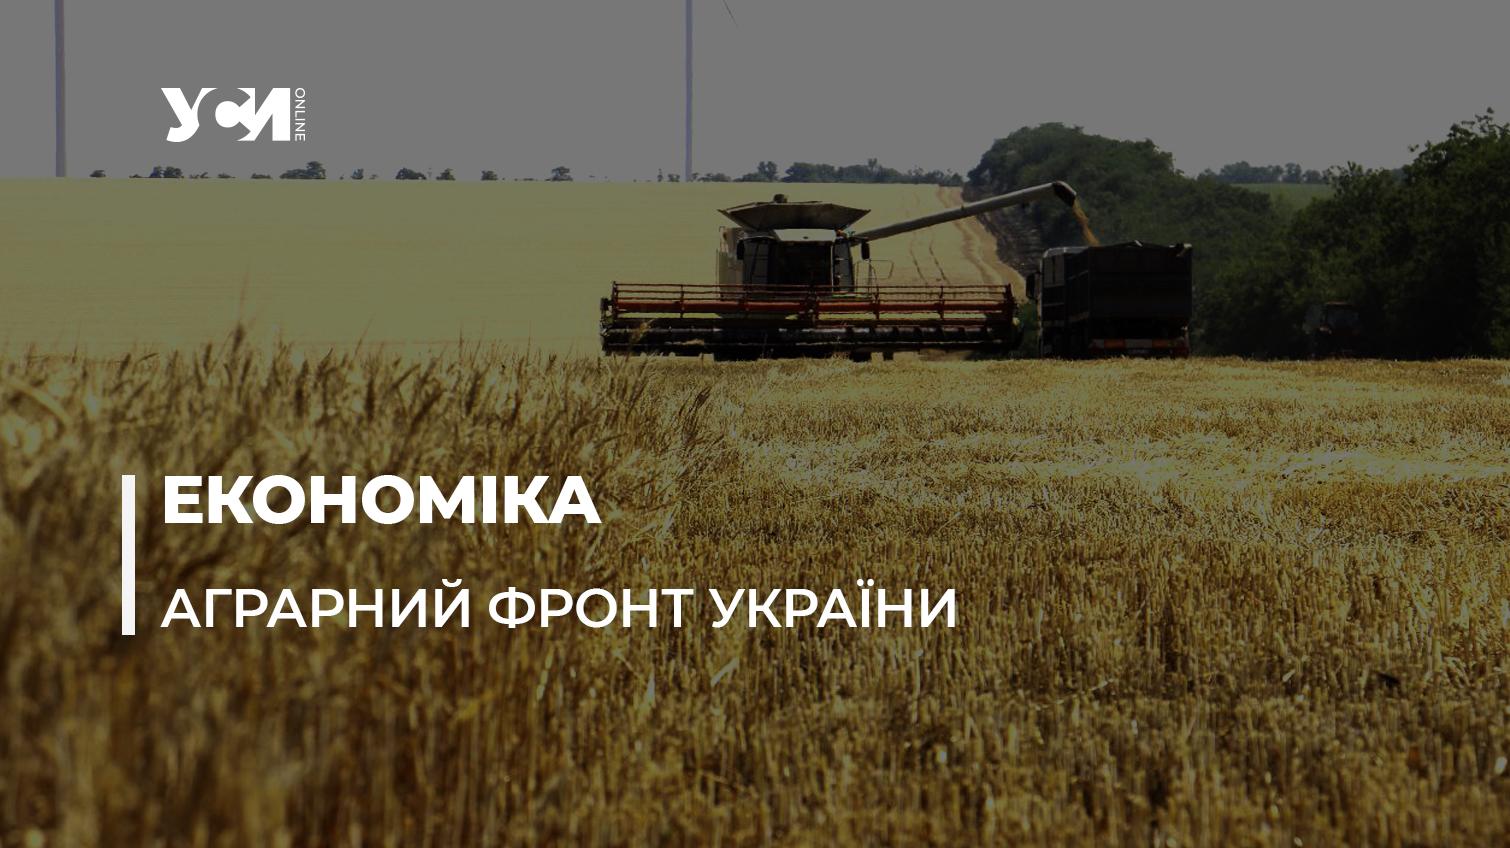 Аграрний фронт Одеського регіону: низькі закупівельні ціни на зерно та подорожчання овочів (відео) «фото»